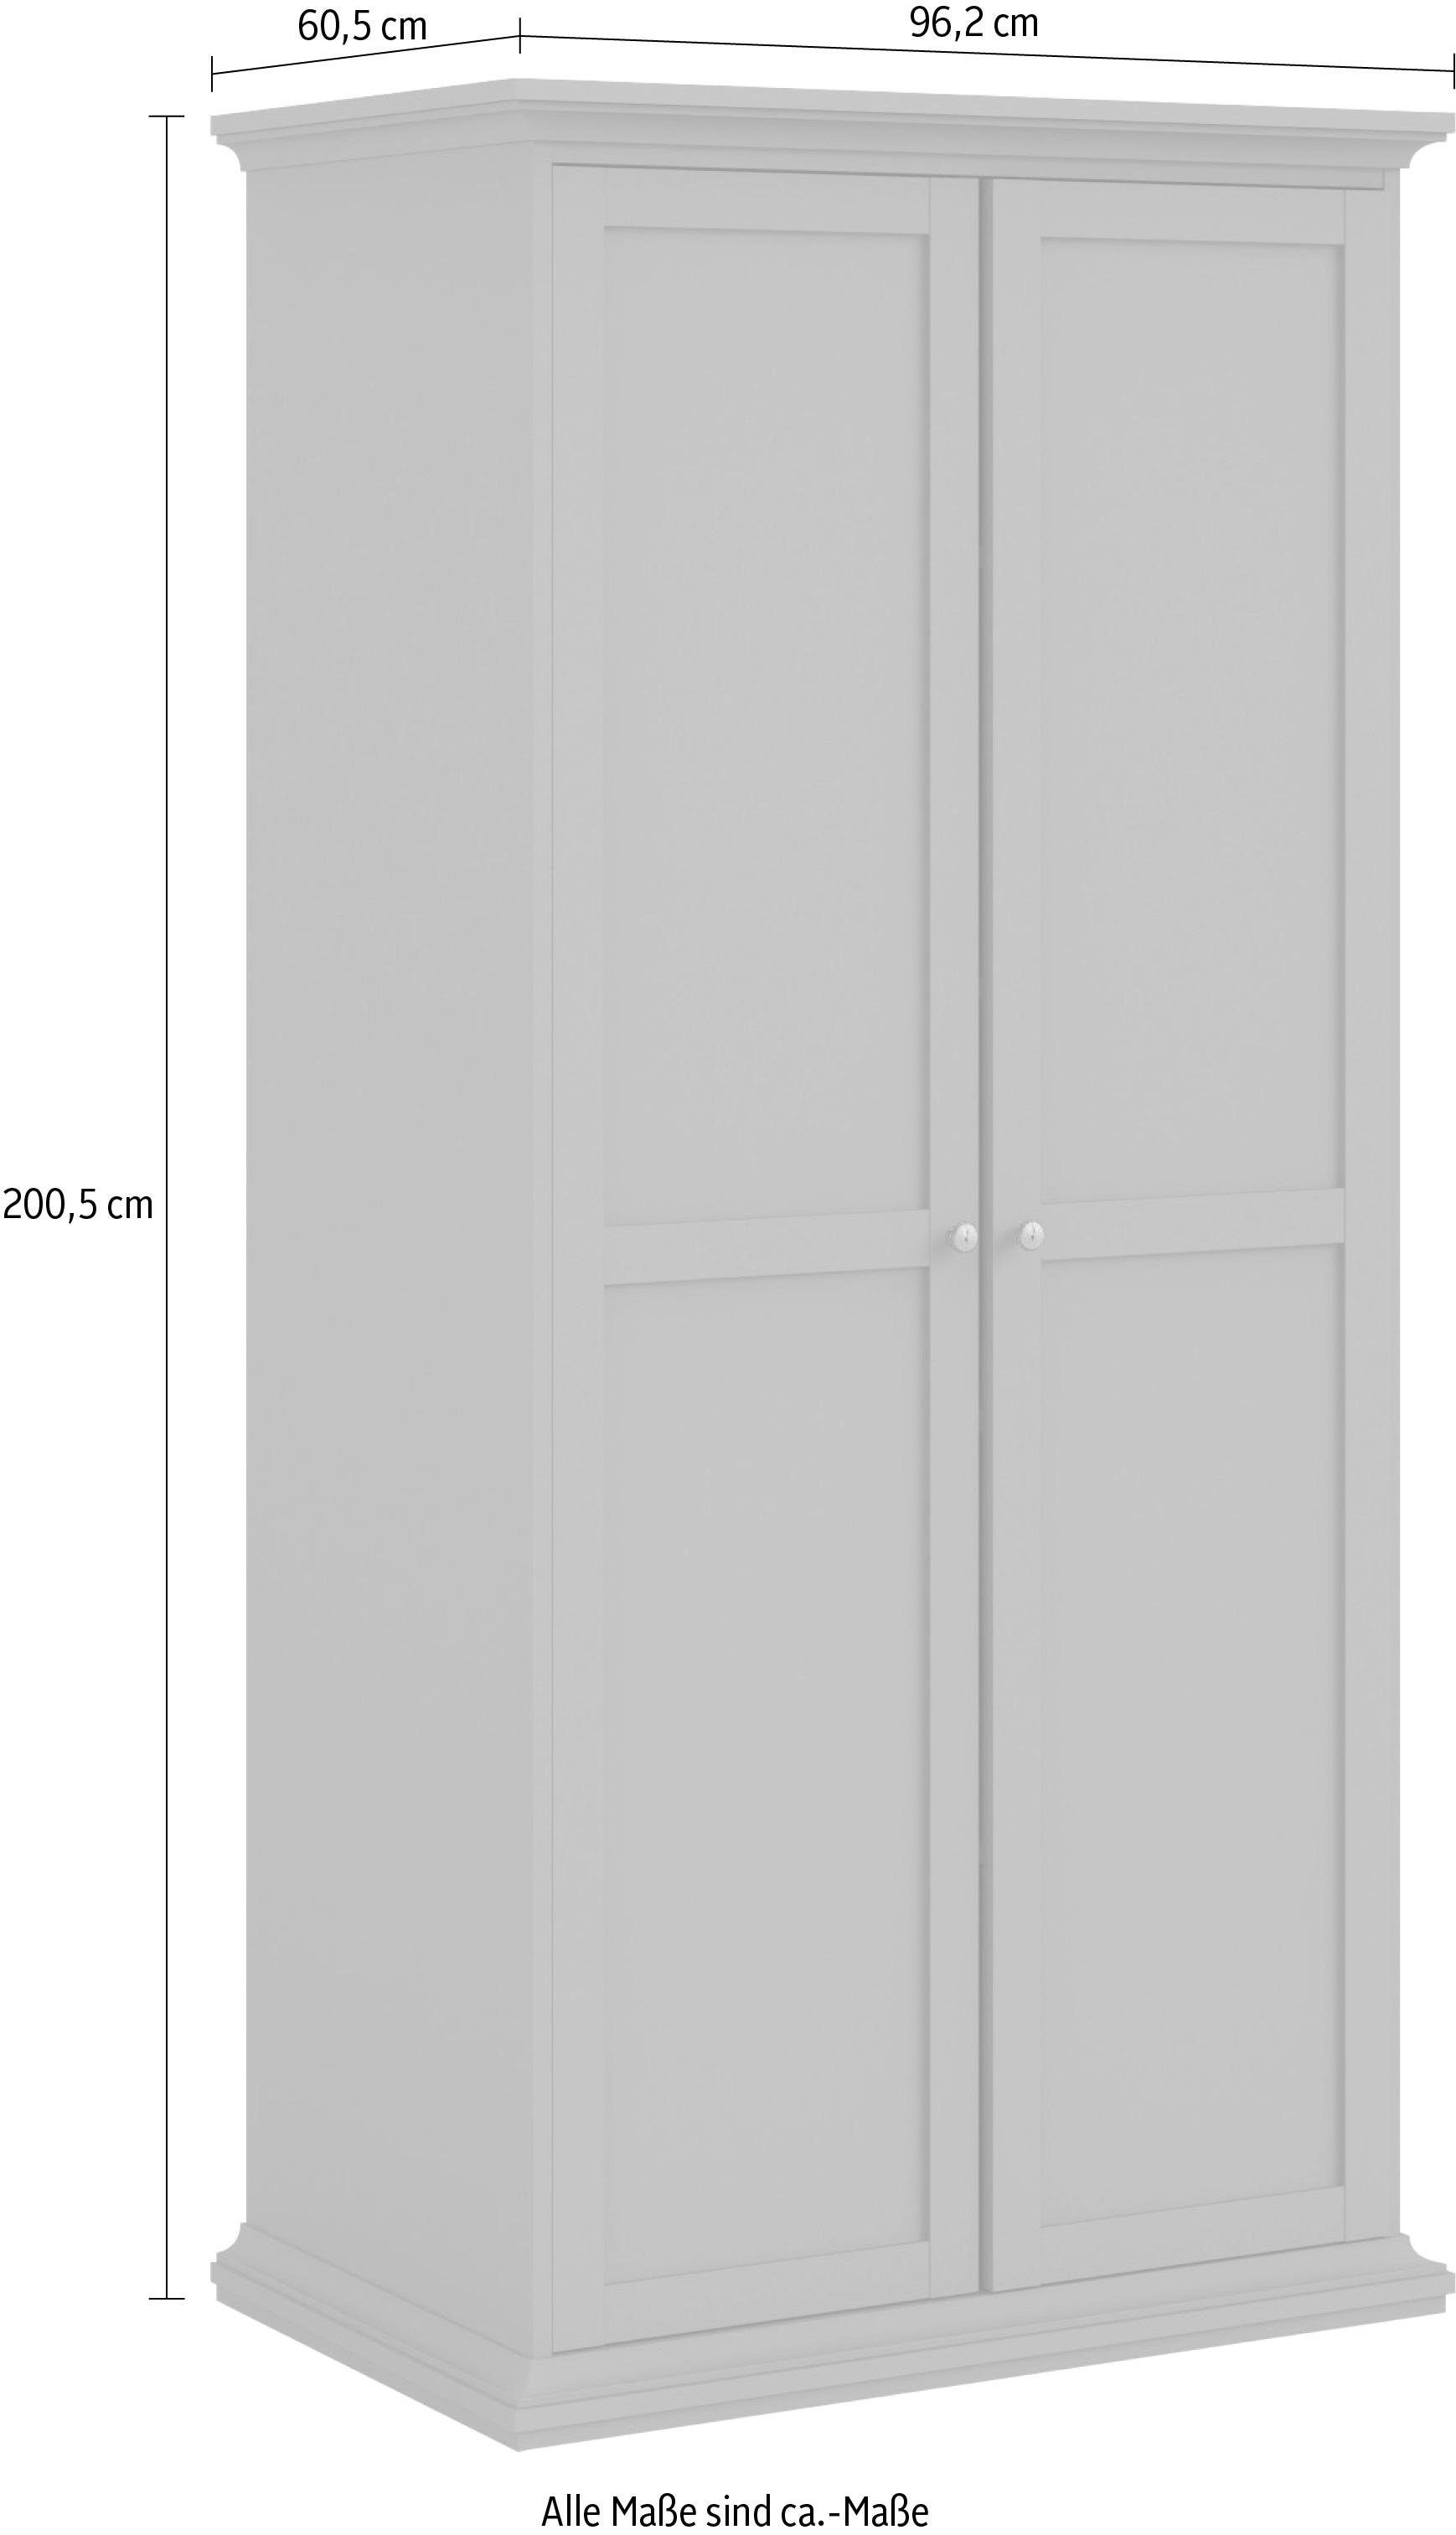 Home affaire Drehtürenschrank »Paris«, im Landhaus-Stil aus schönem Holzfurnier, Höhe 200,5 cm (4 türig)